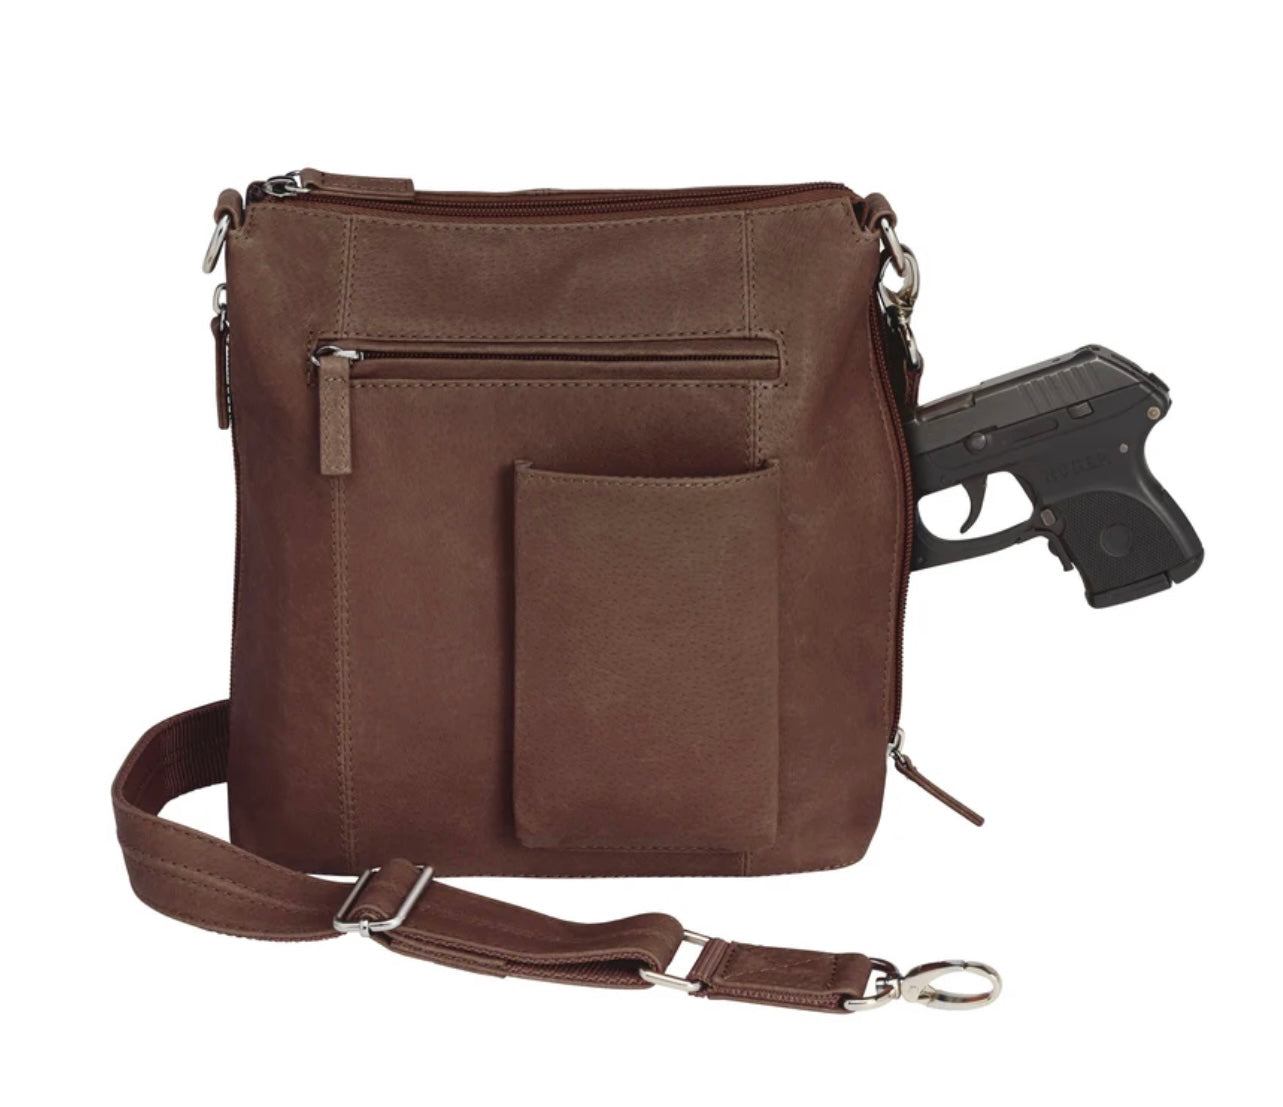 Fullah Sugah “The Perfect Bag” Purse/Handbag | eBay